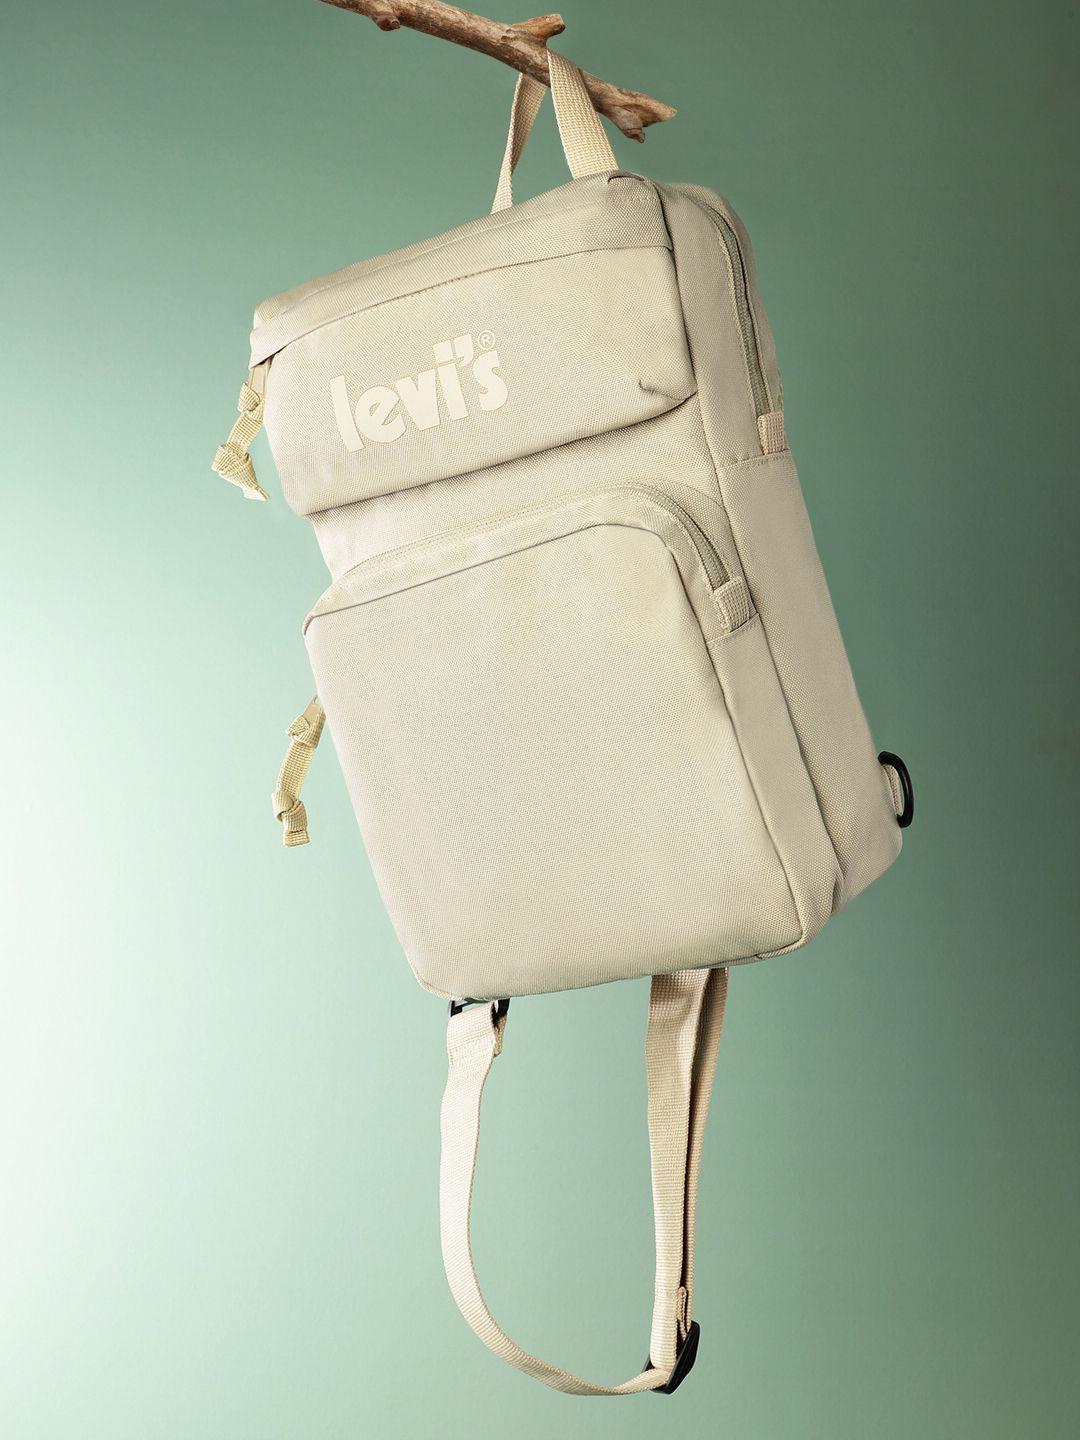 levis men backpack -  6 ltr